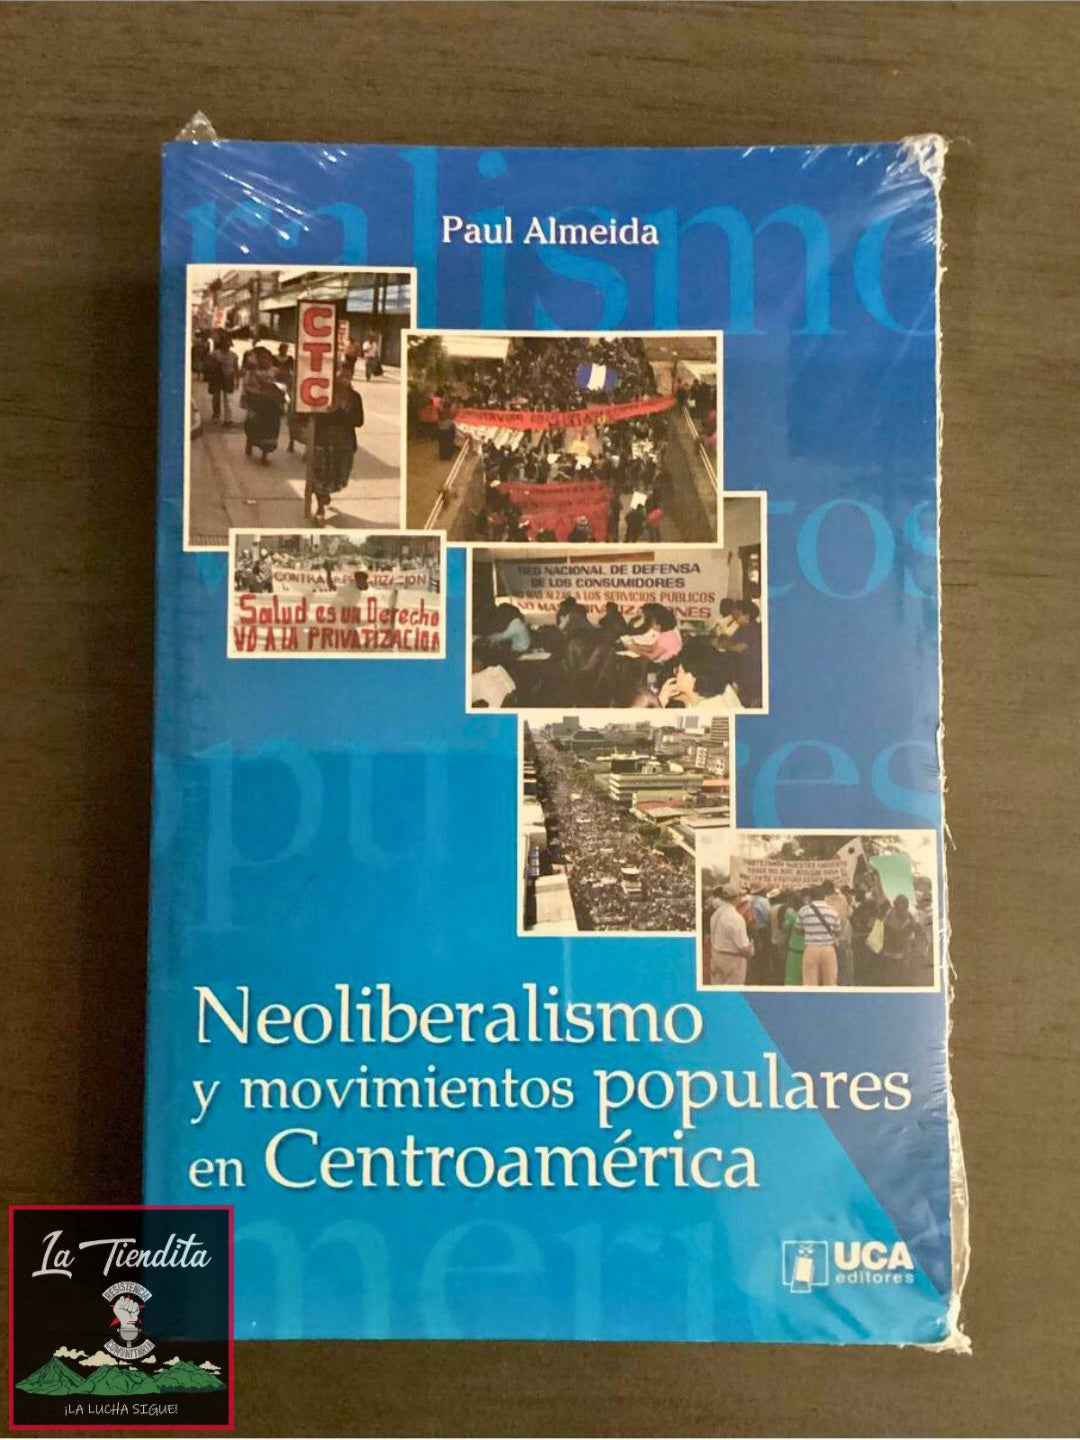 "Neoliberalismo y movimientos populares en Centroamérica" de Paul Almeida